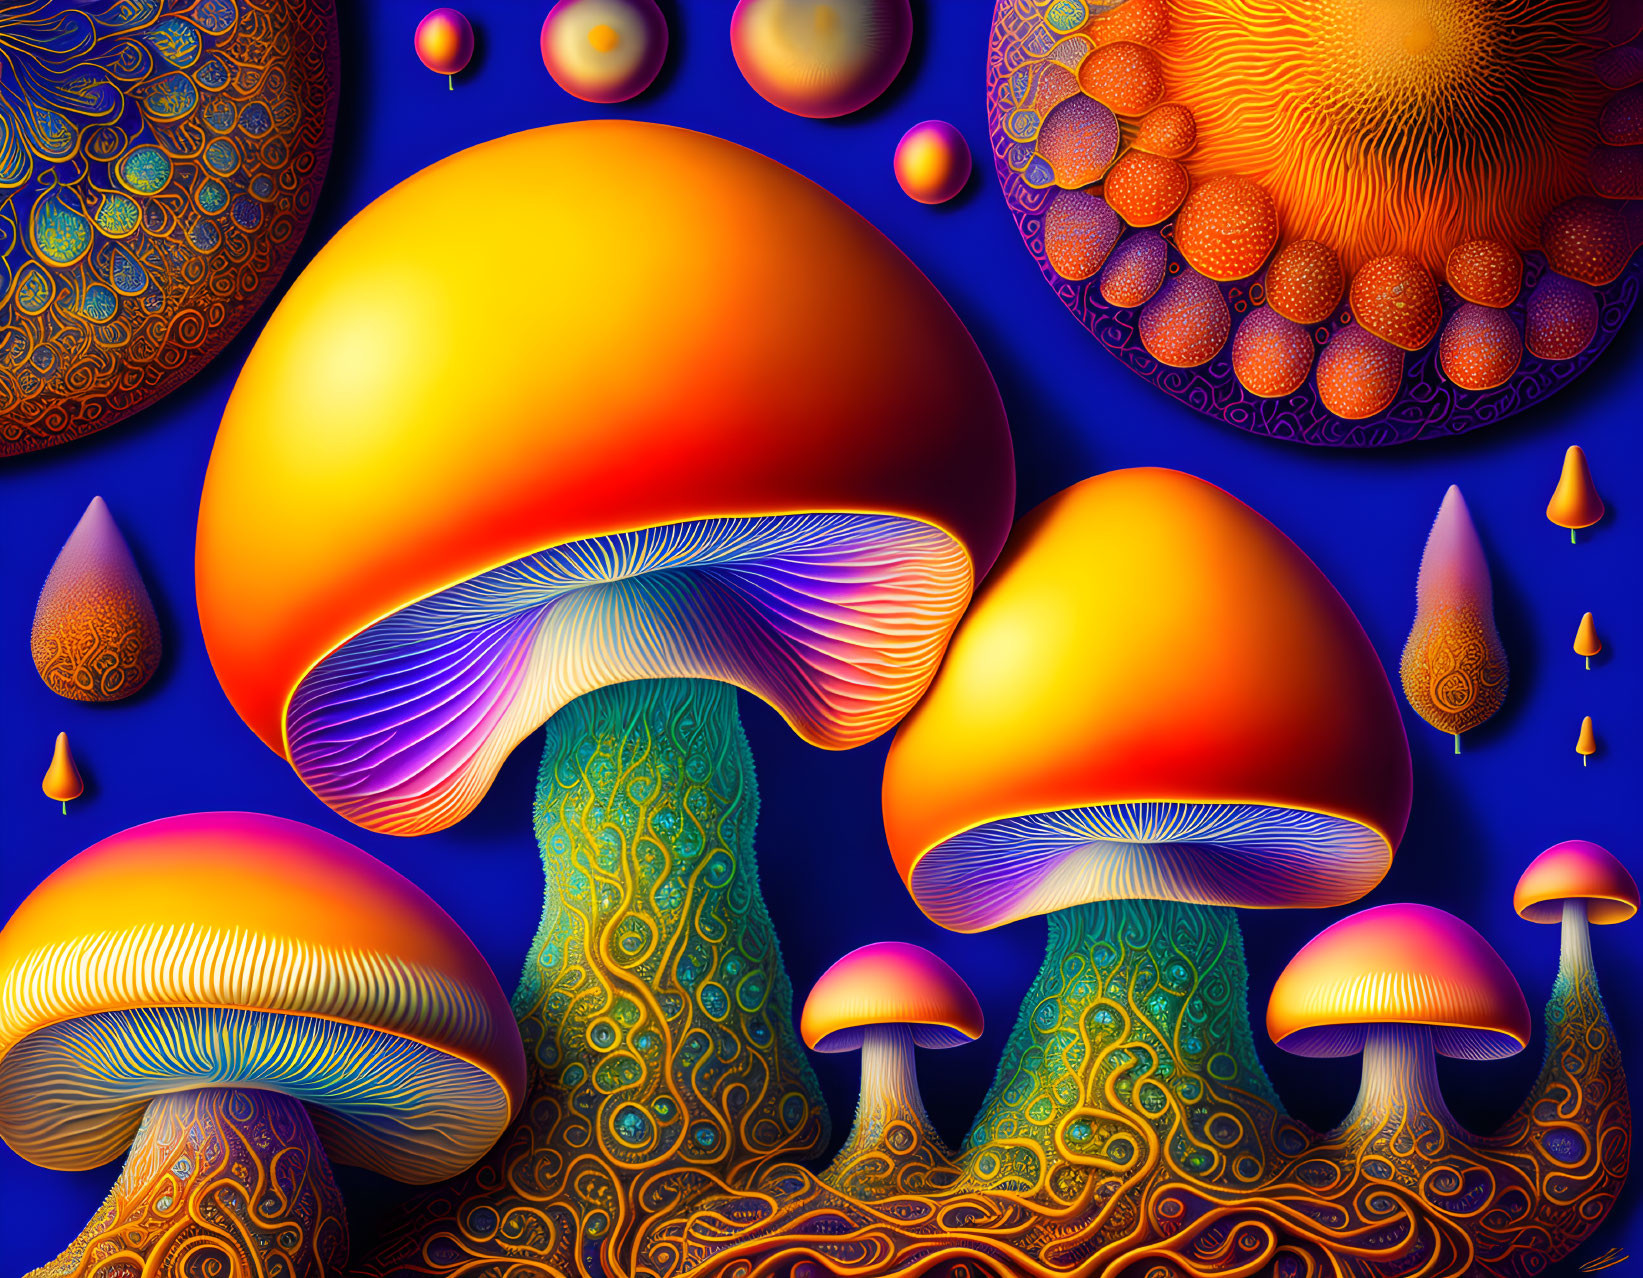 Funky fungi